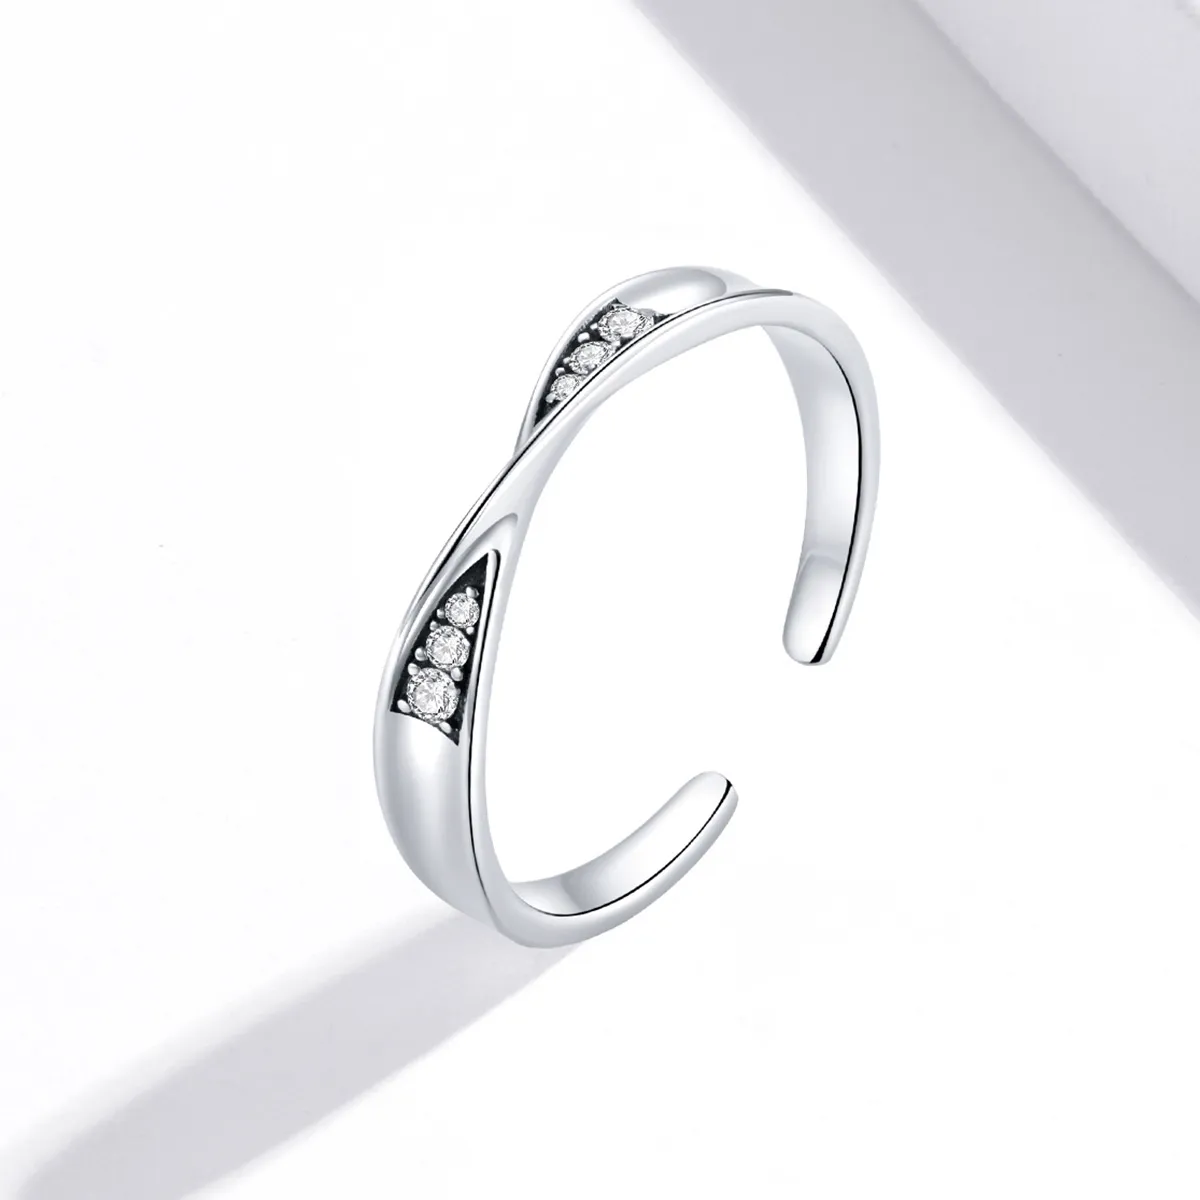 Pandora Style Mobius Ring Pair Ring - Female Open Ring - SCR750